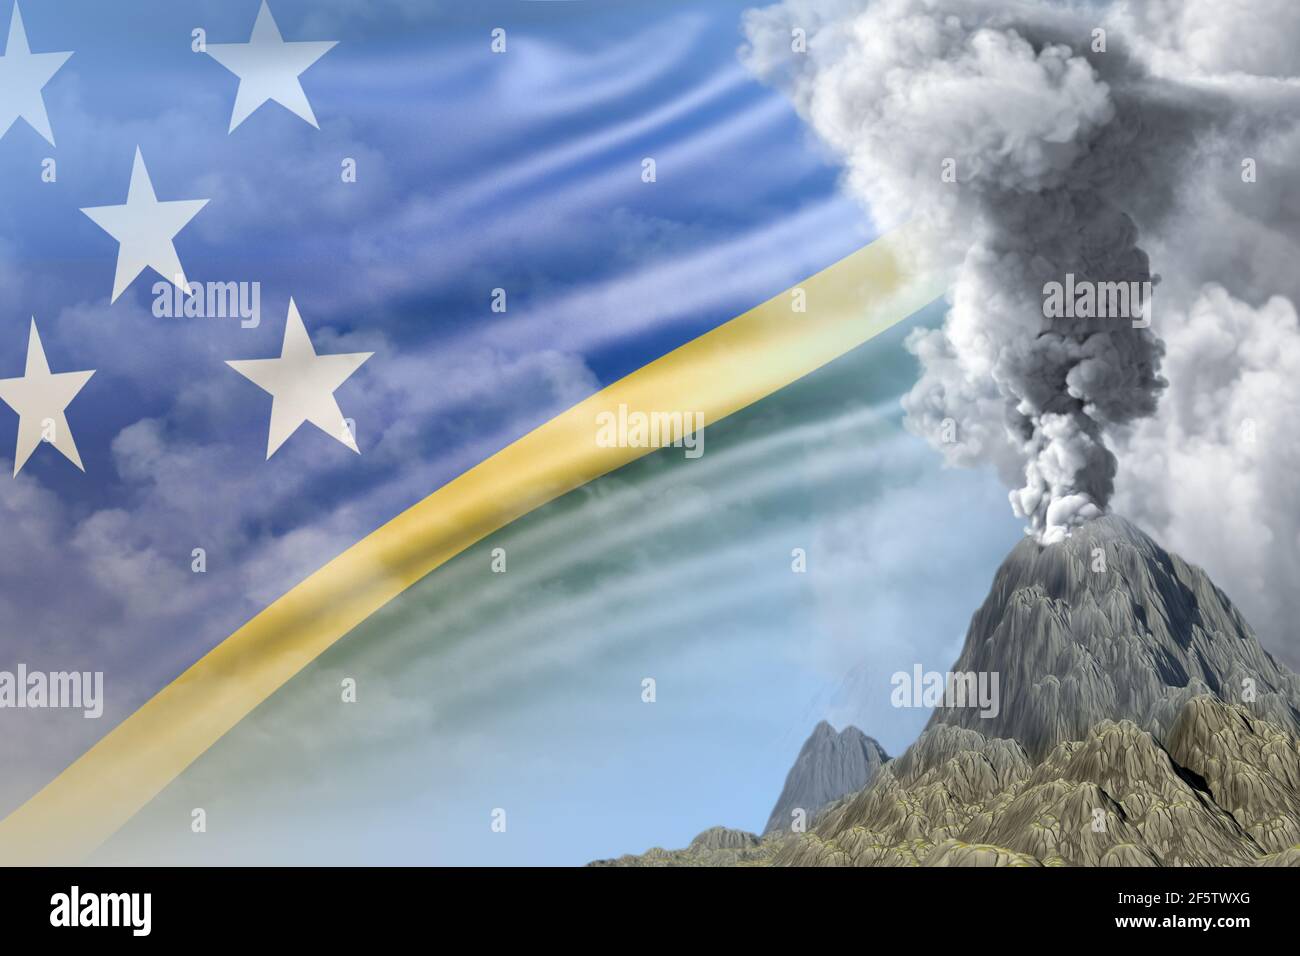 Gran volcán explosión erupción en el día con humo blanco en las Islas  Salomón fondo de la bandera, sufren de desastres naturales y el concepto de  cenizas volcánicas - 3D Fotografía de